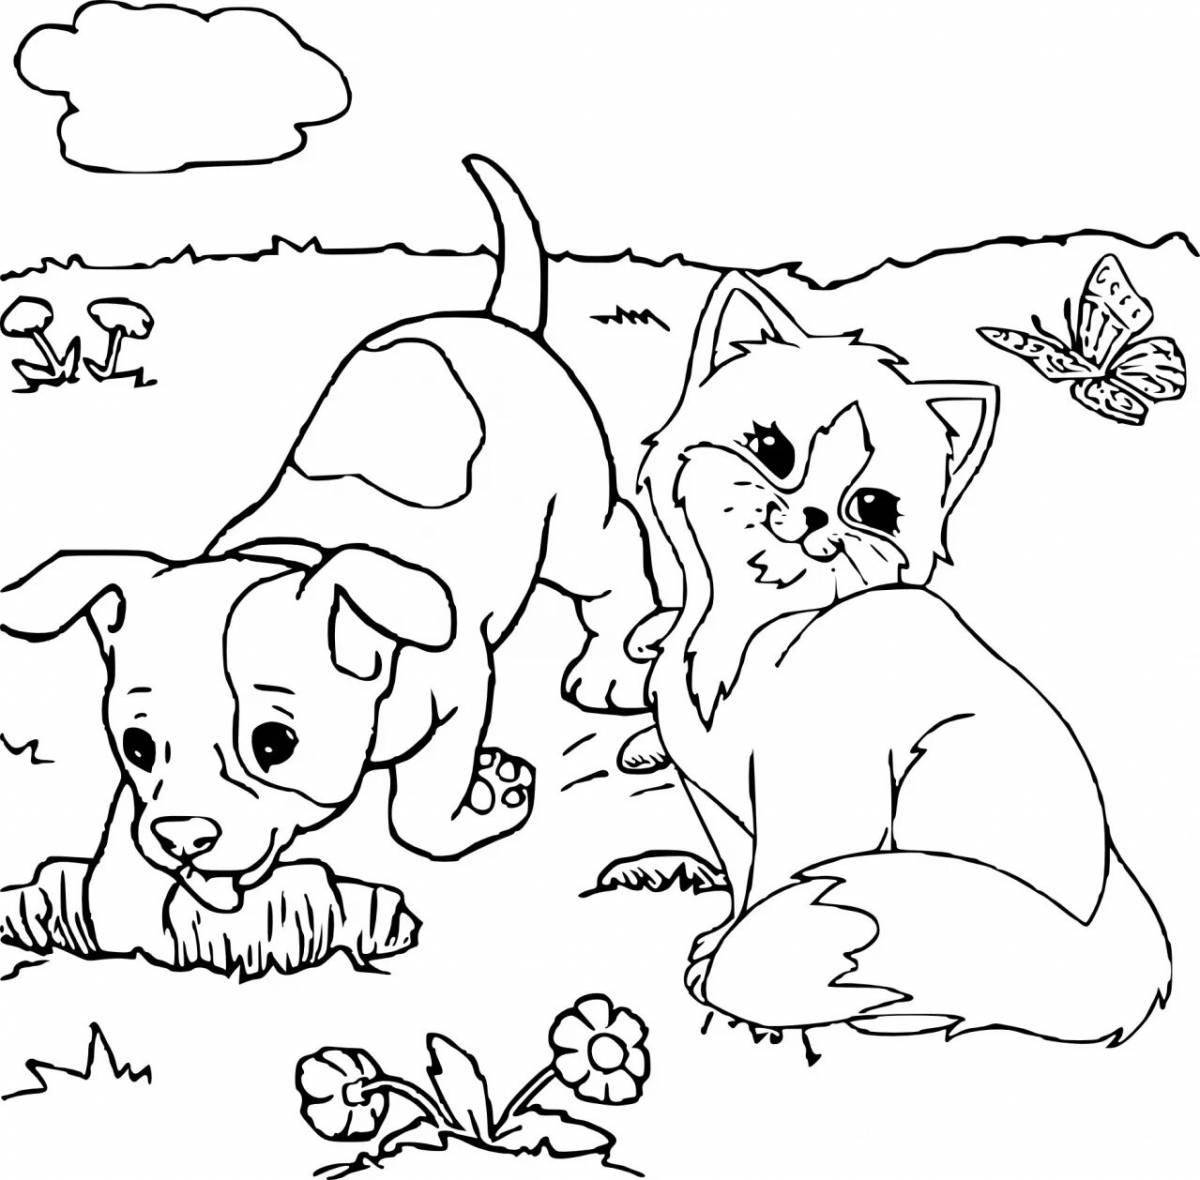 Юмористическая раскраска домашние животные для детей 5-6 лет